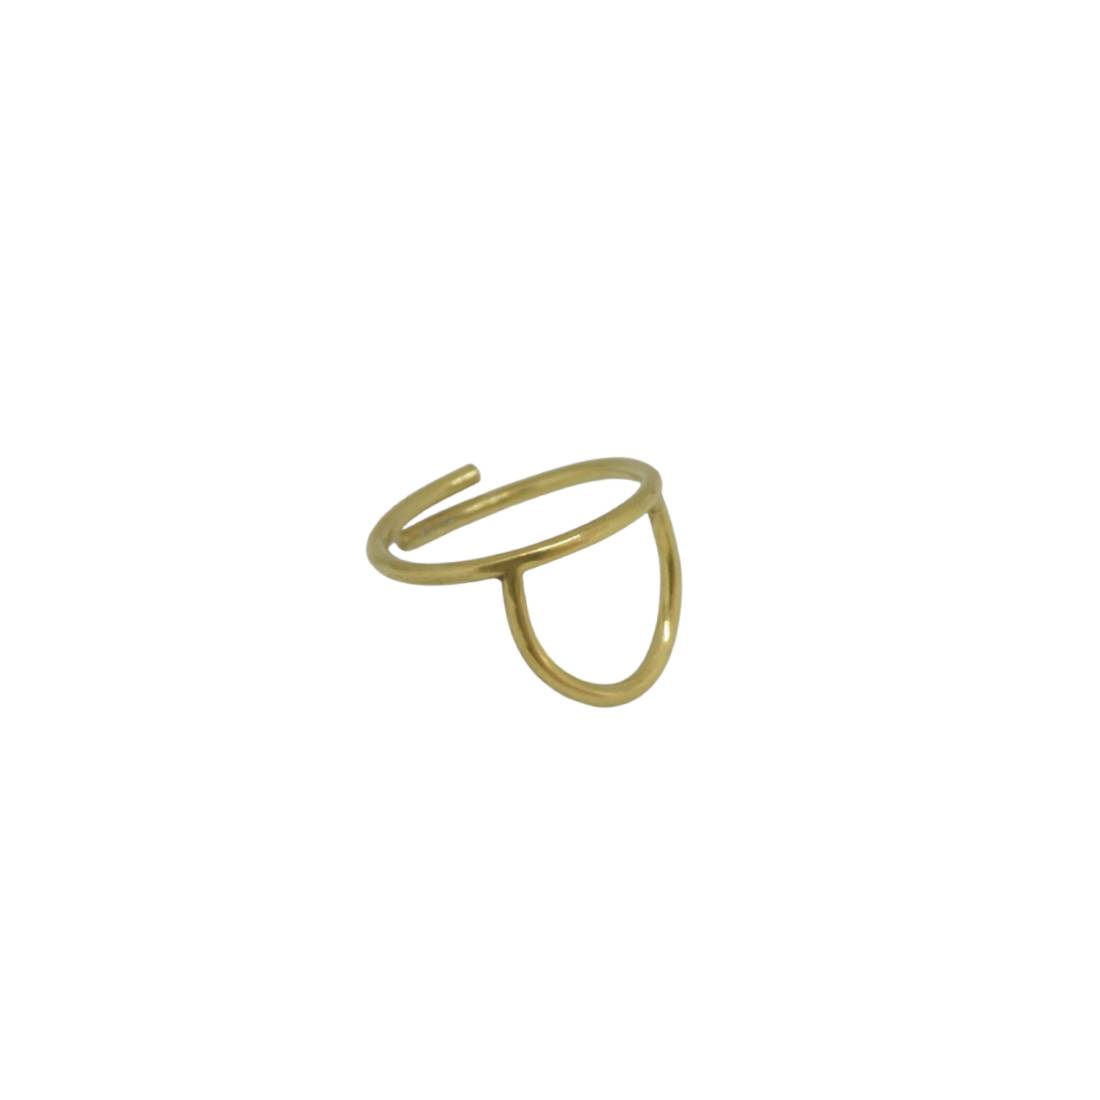 “Μισοφέγγαρο” επίχρυσο δαχτυλίδι “Μισοφέγγαρο” επίχρυσο δαχτυλίδι “Μισοφέγγαρο” επίχρυσο δαχτυλίδι 4